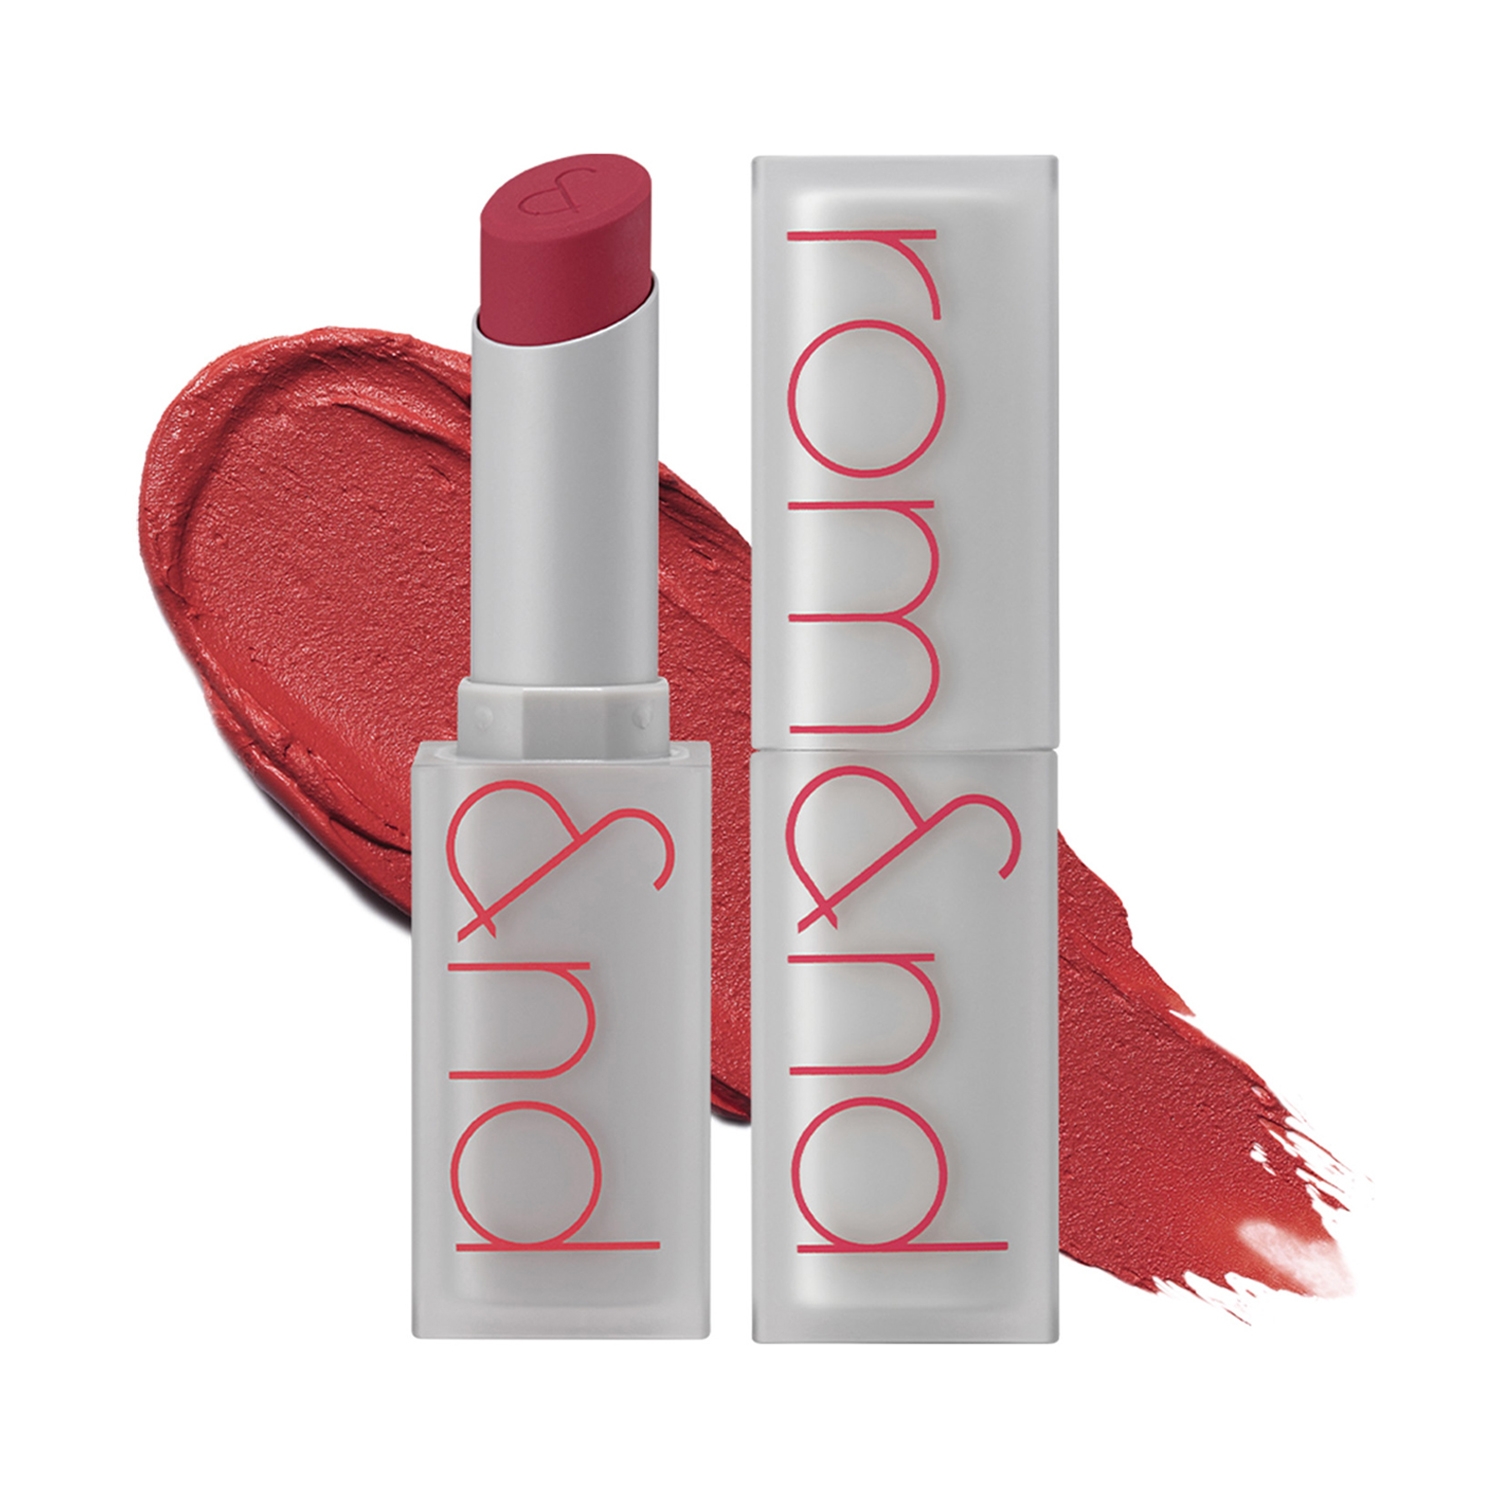 Rom&nd | Rom&nd Zero Matte Lipstick - 01 Dusty Pink (3g)